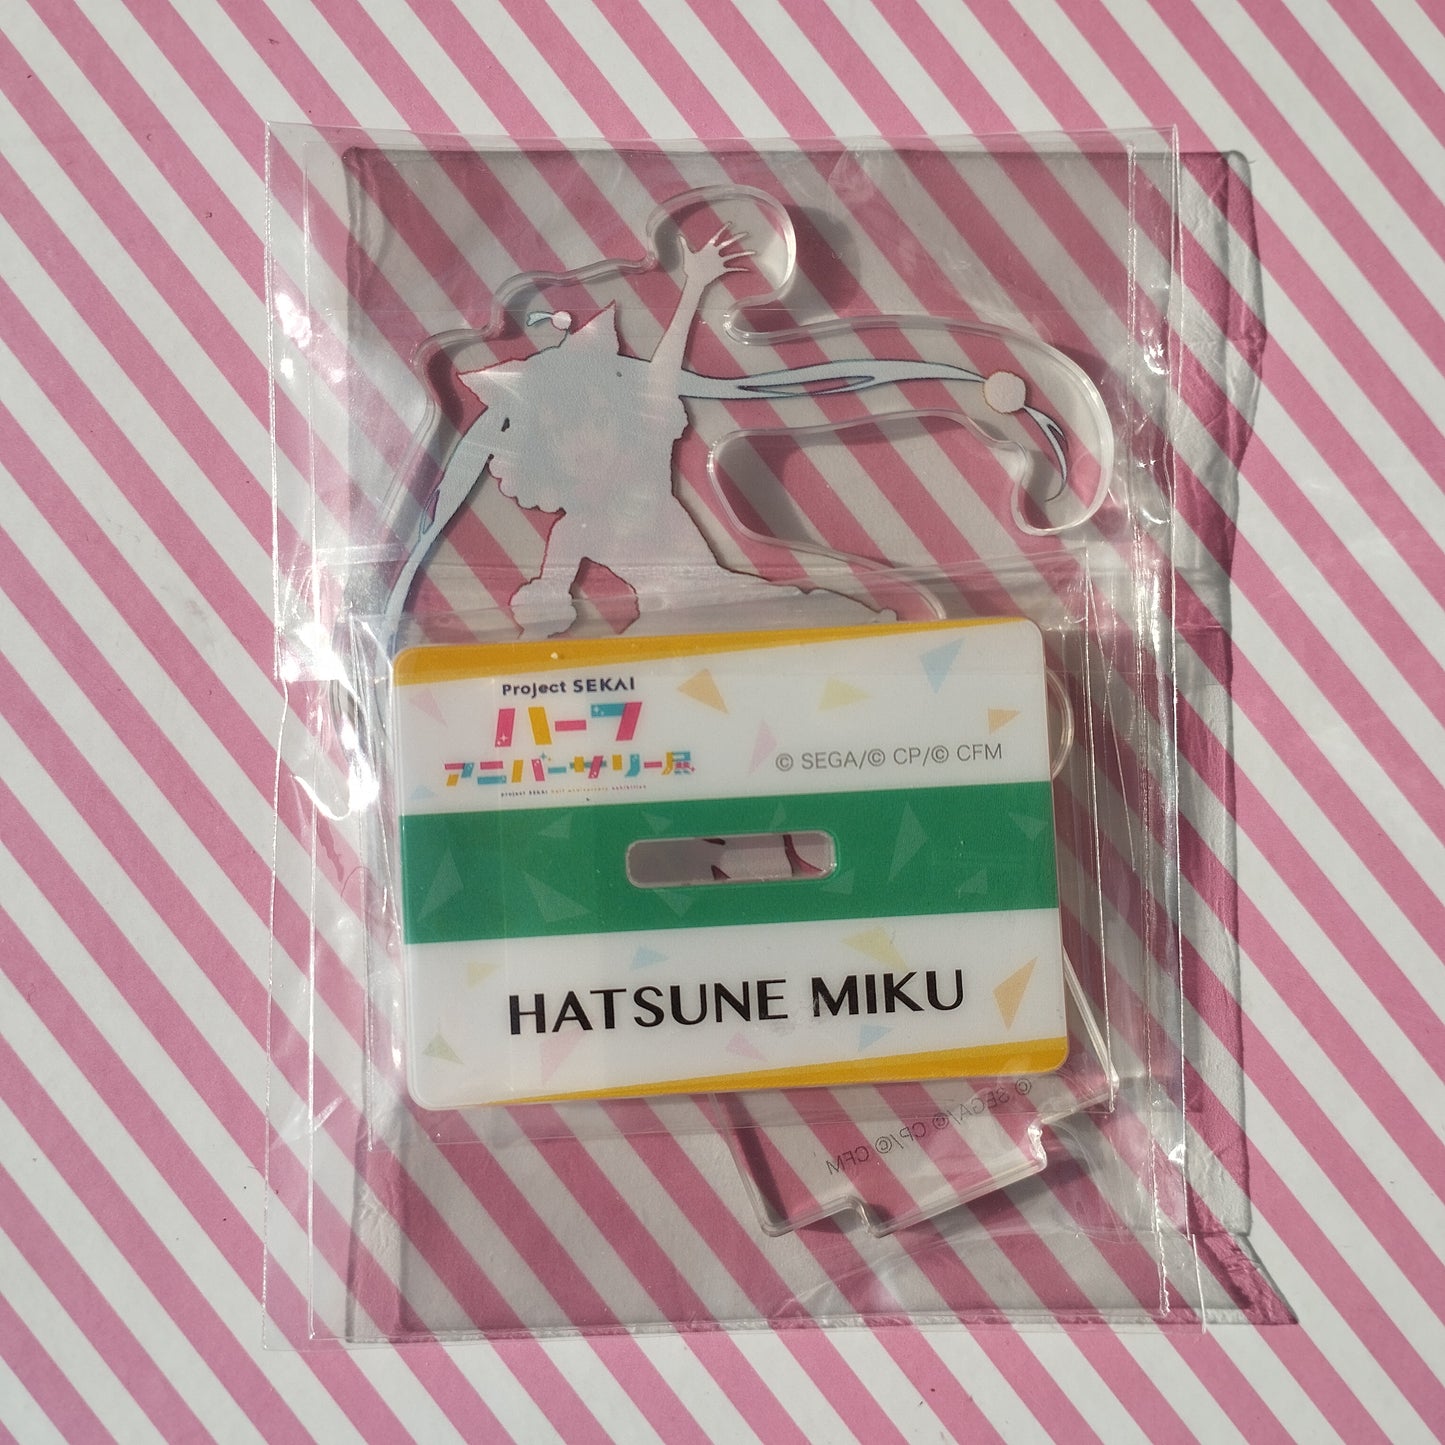 Mini Soporte Acrilico Hatsune Miku - Project Sekai Colorful Stage! ft. Hatsune Miku